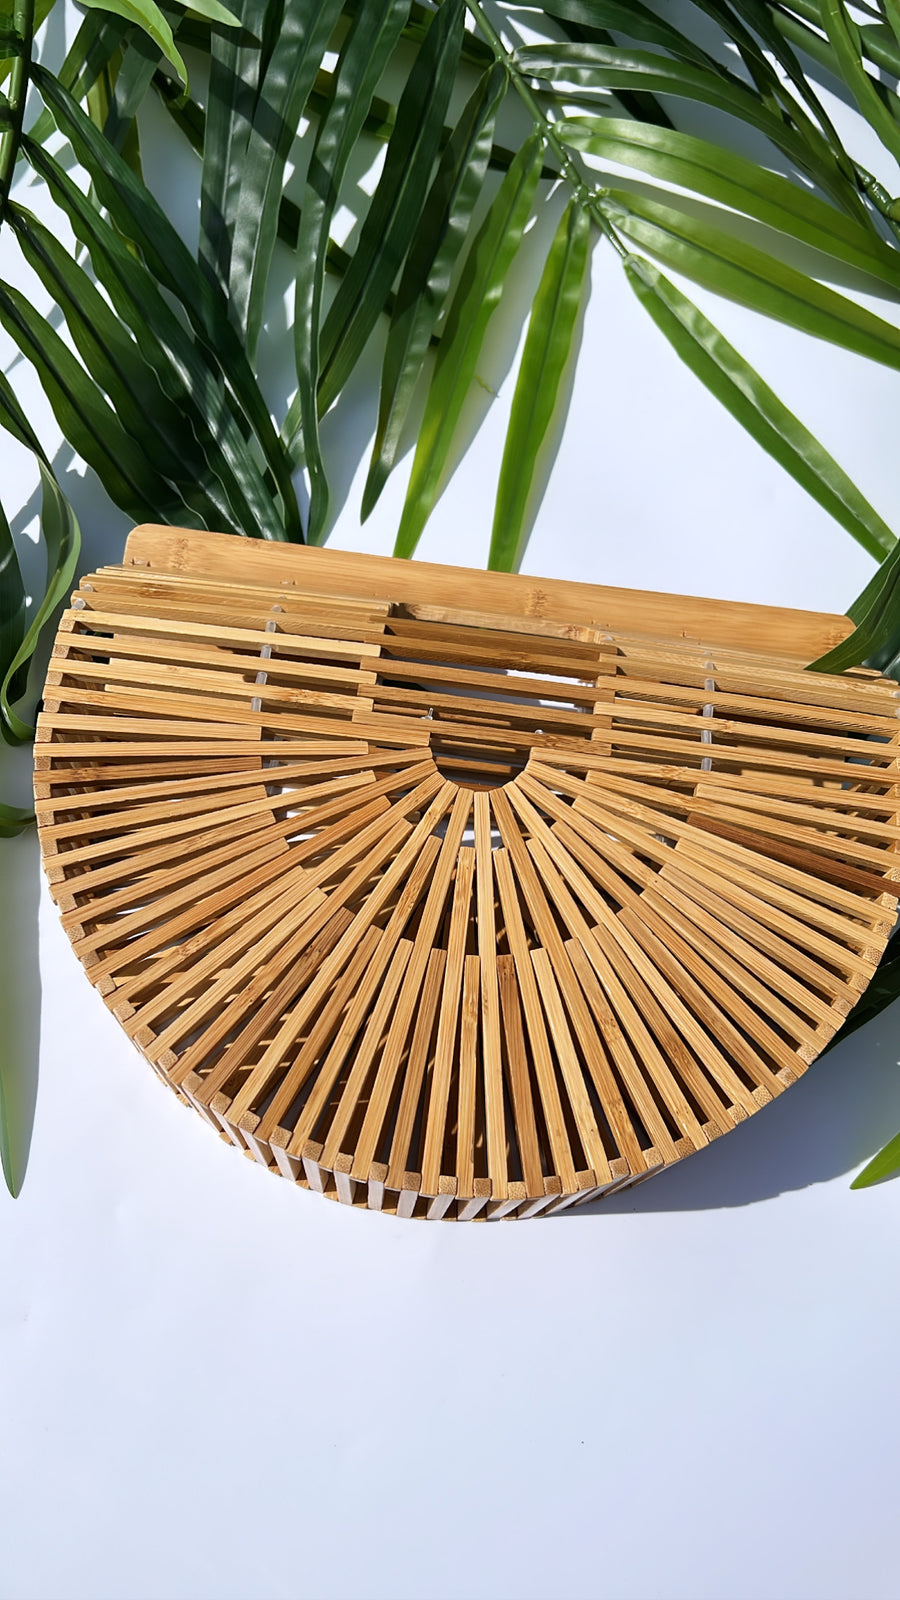 Bamboo Clutch Handbag